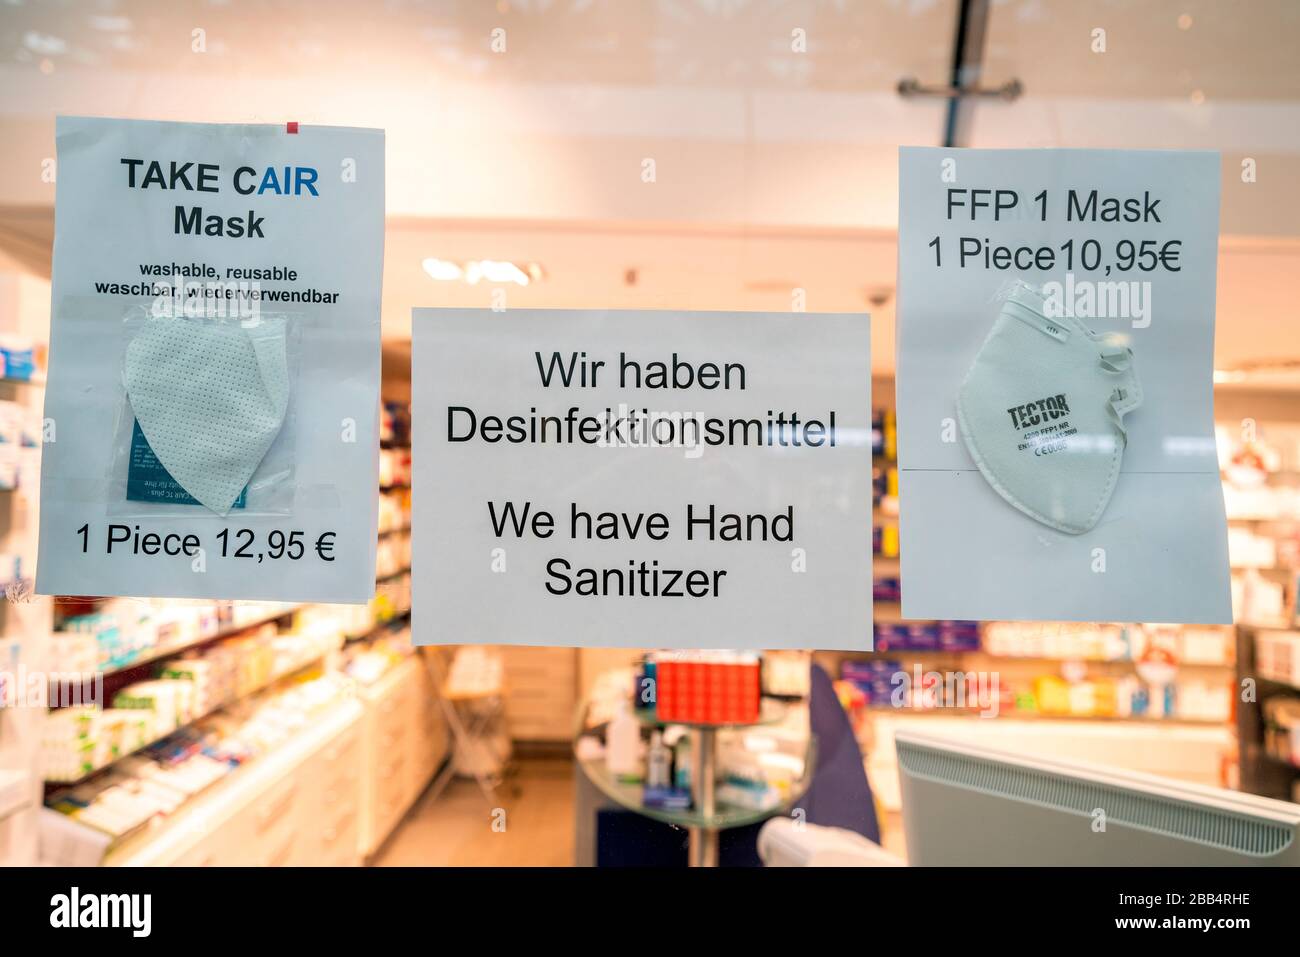 FFP1 1 masque et désinfectant pour les mains dans la pharmacie aiport Tegel Banque D'Images